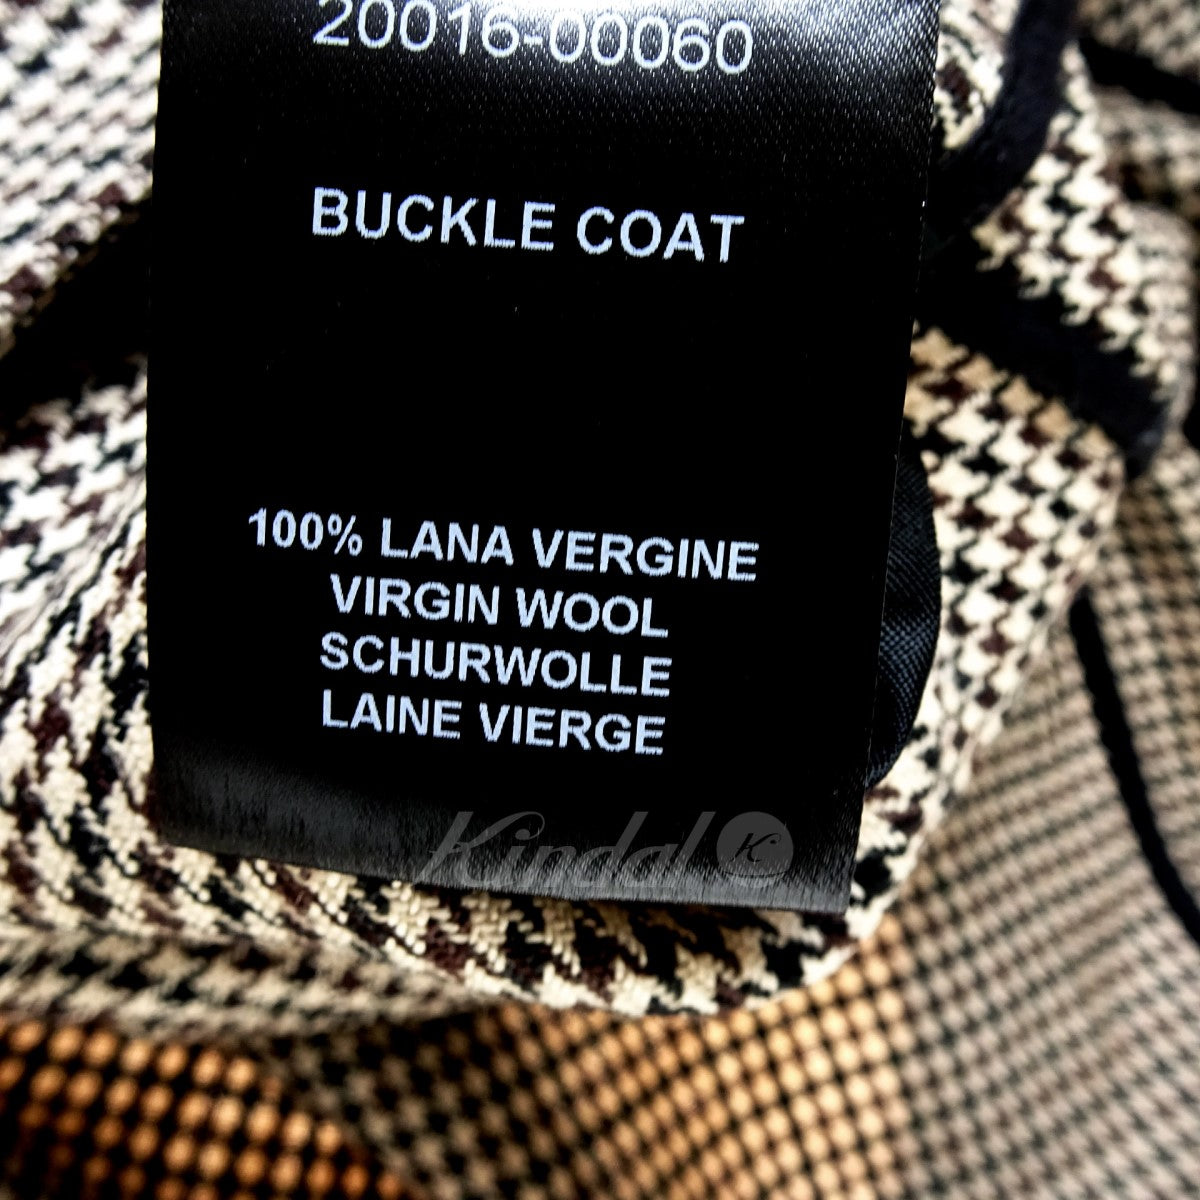 Buckle coat 17SS ハウンドトゥースコート 172-616 20016-00060